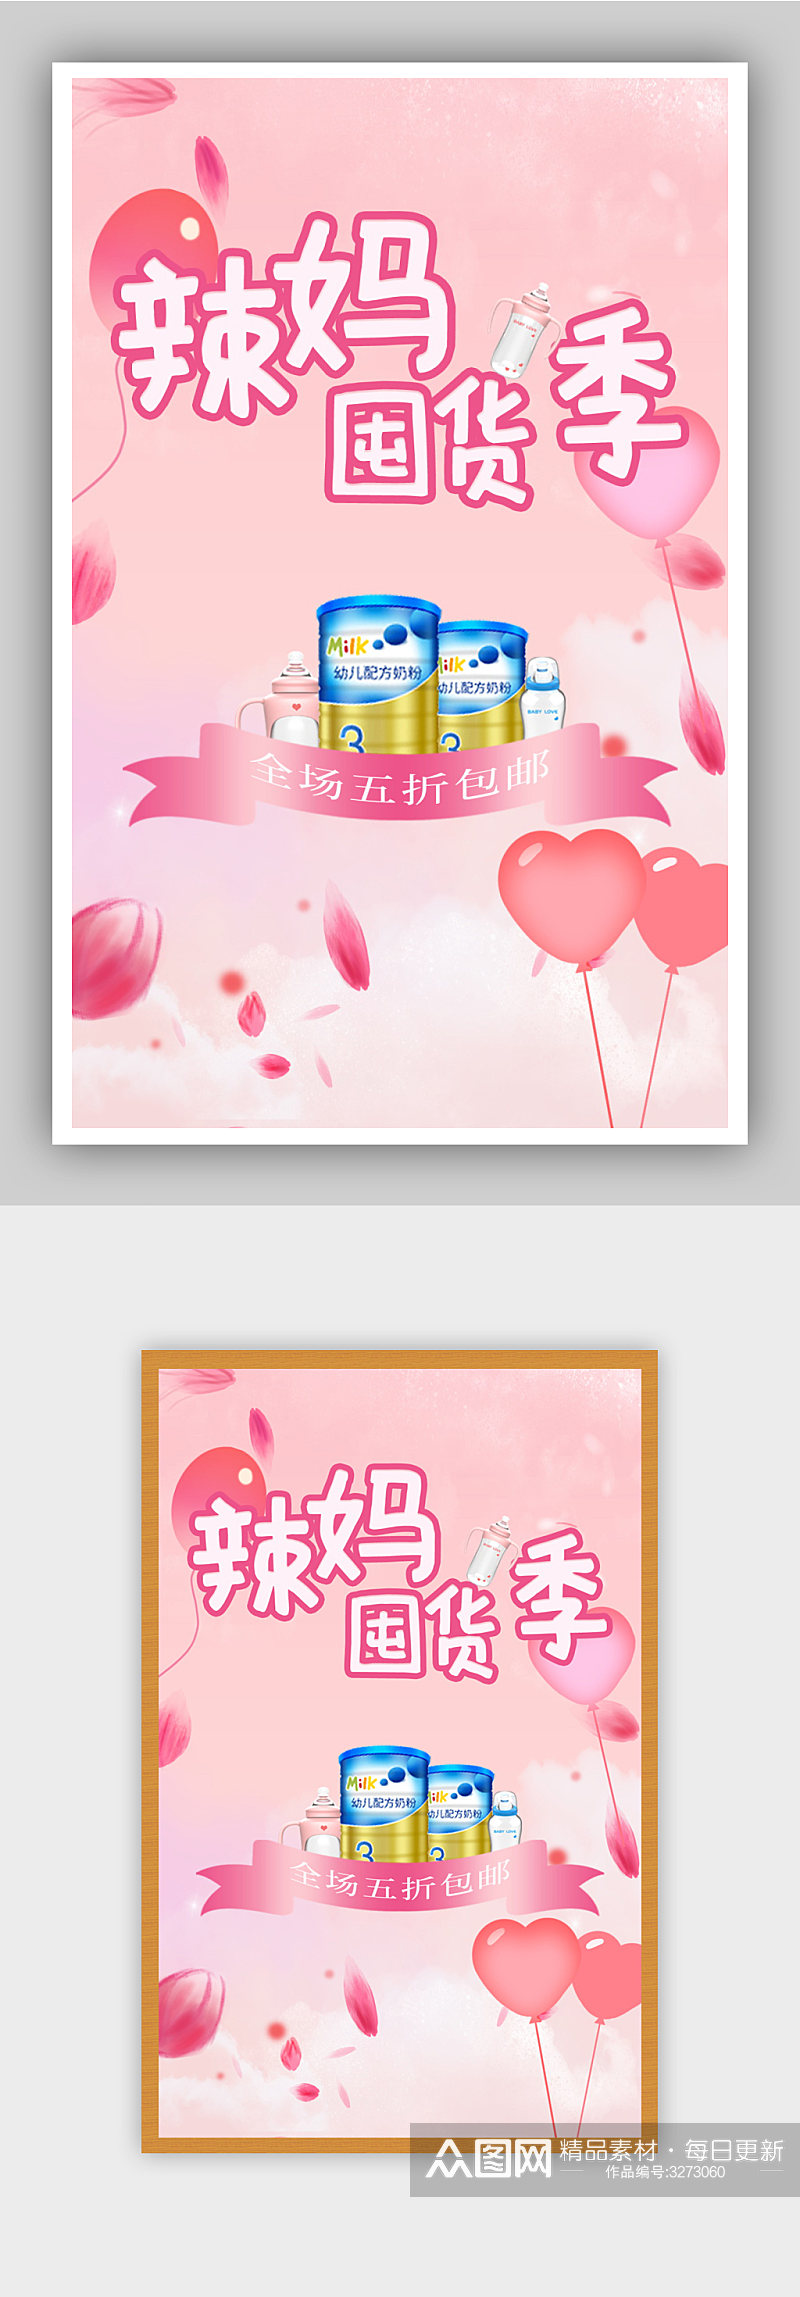 粉色浪漫母婴用品促销海报素材